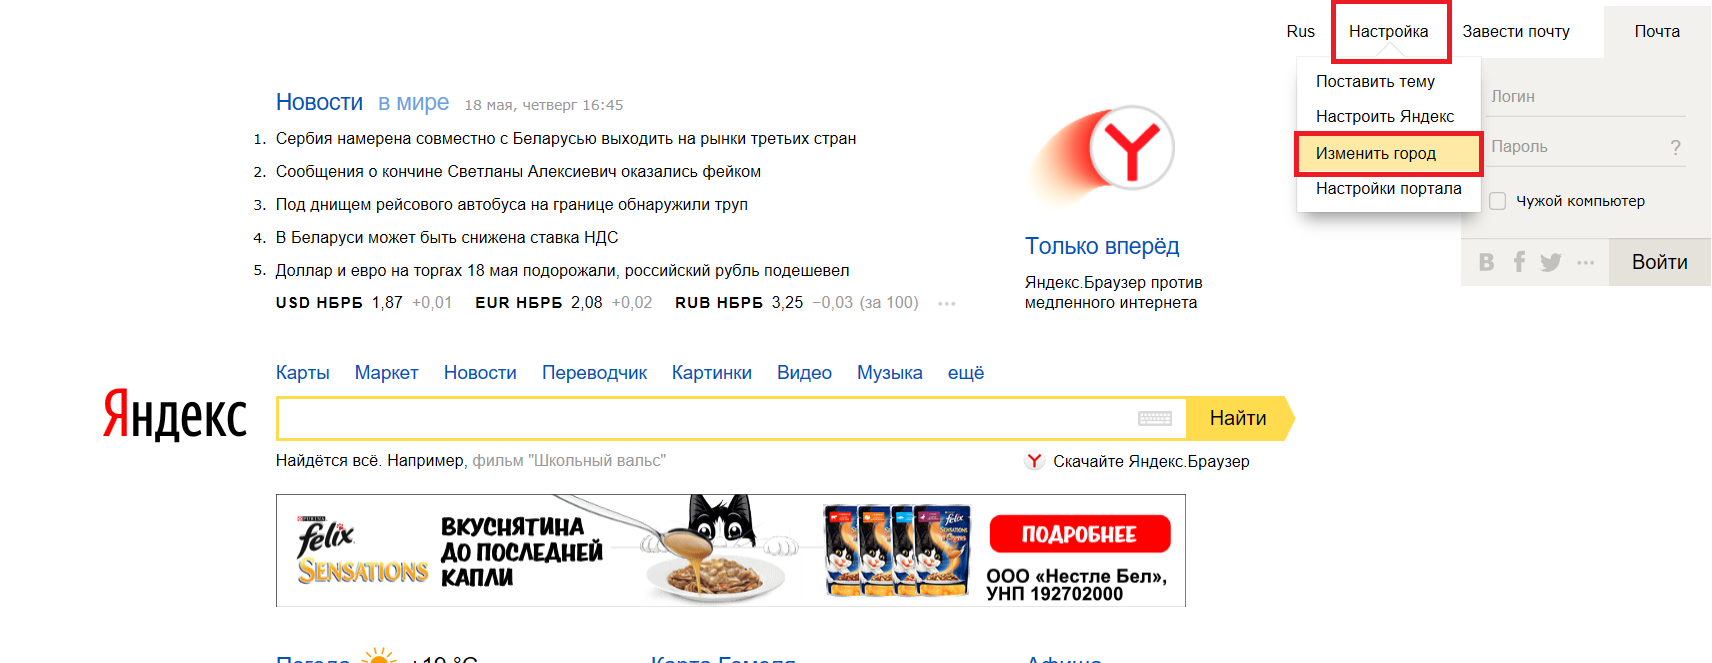 Как сделать в яндексе новости на главной. Как поменять город в Яндексе. Изменить город в Яндексе. Изменить город на стартовой странице Яндекса.